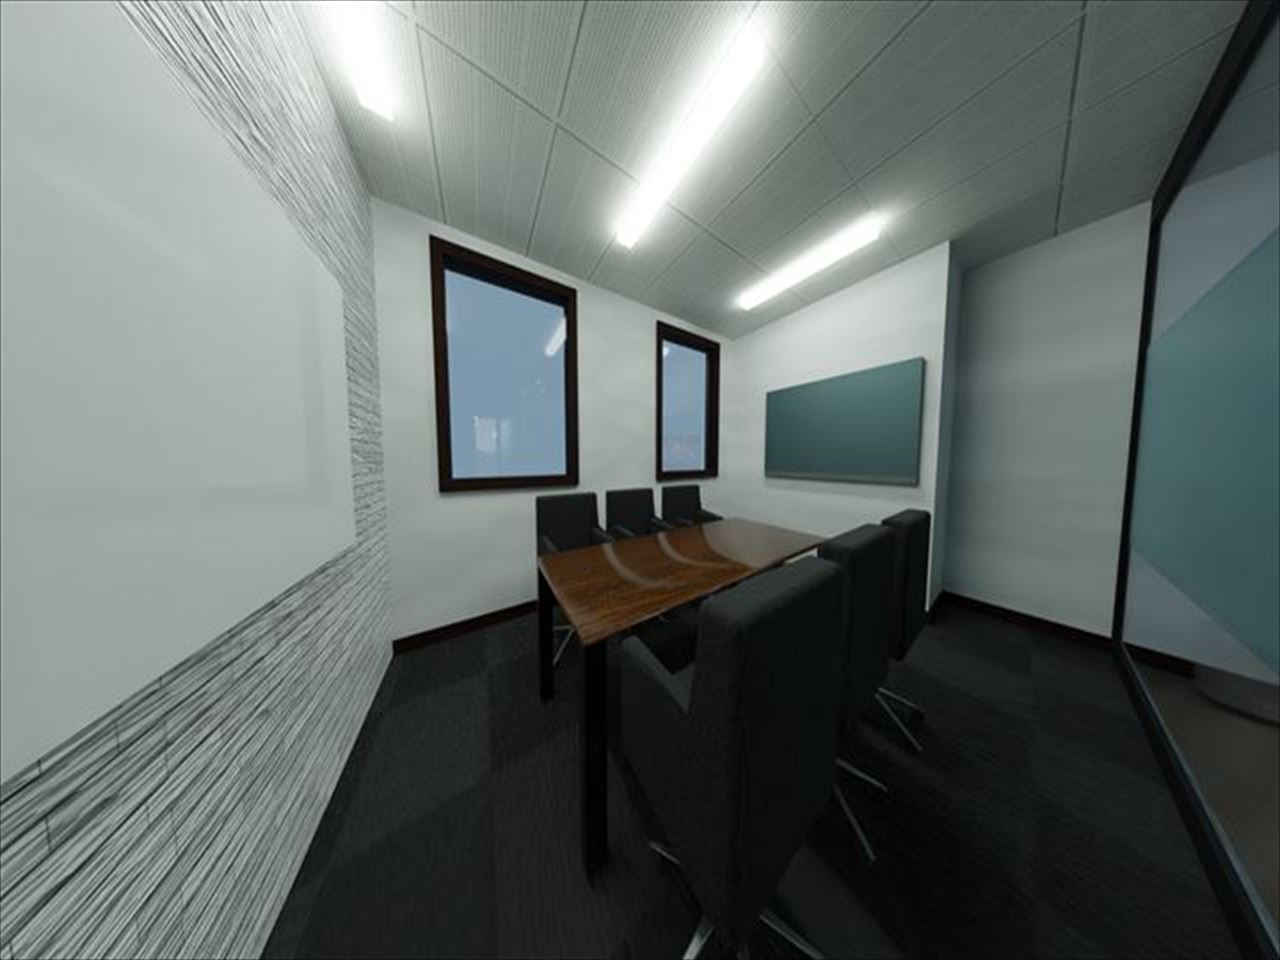 会議室3Dモデル